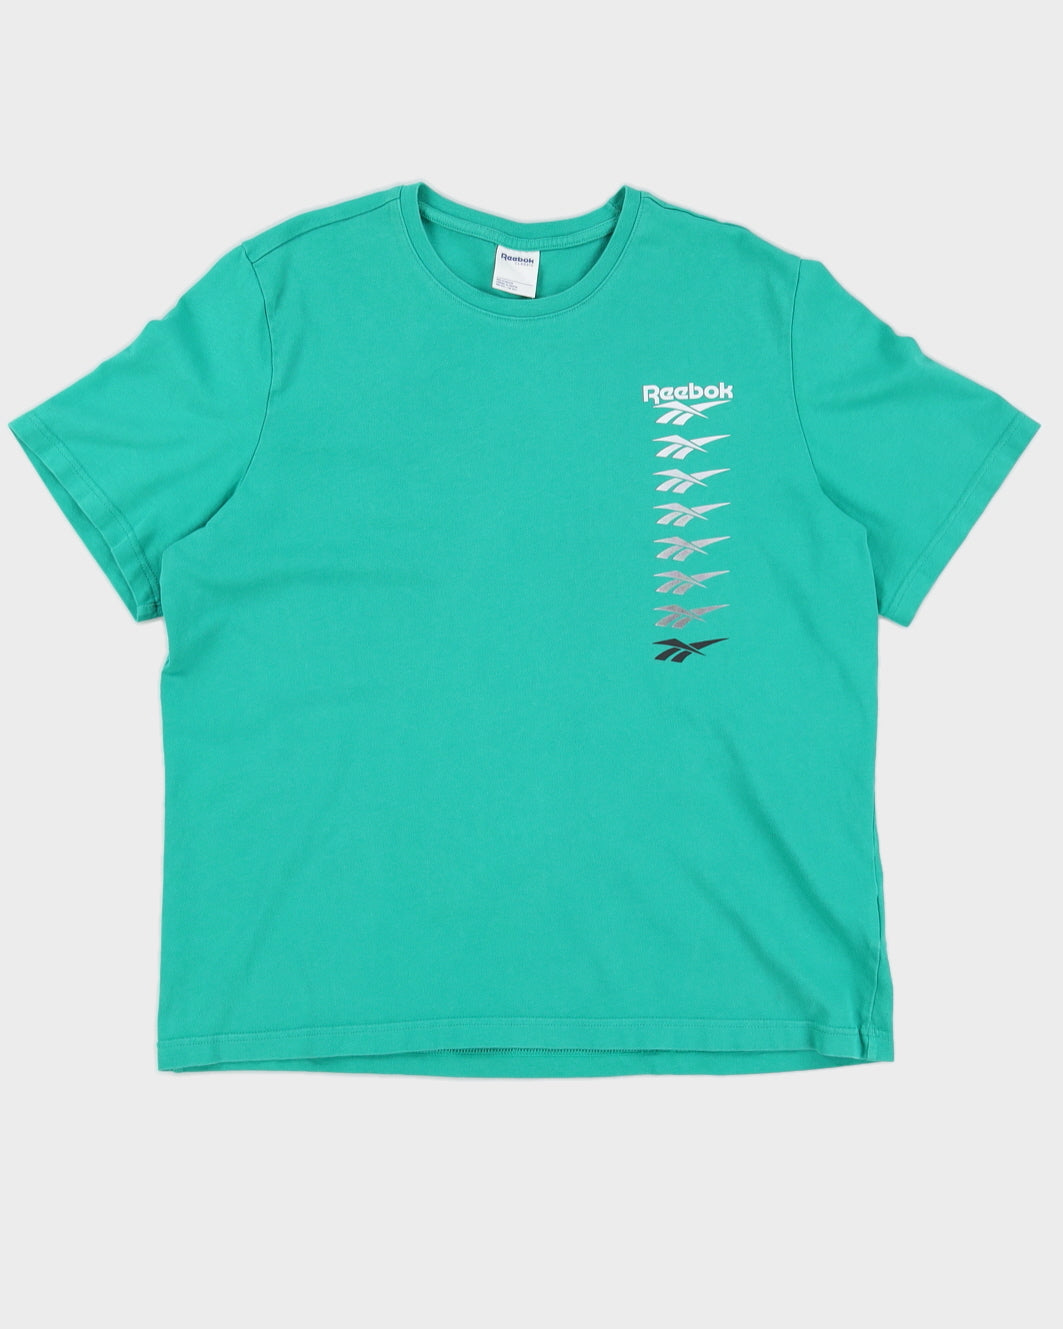 Reebok Men's Green Logo T-Shirt - XL